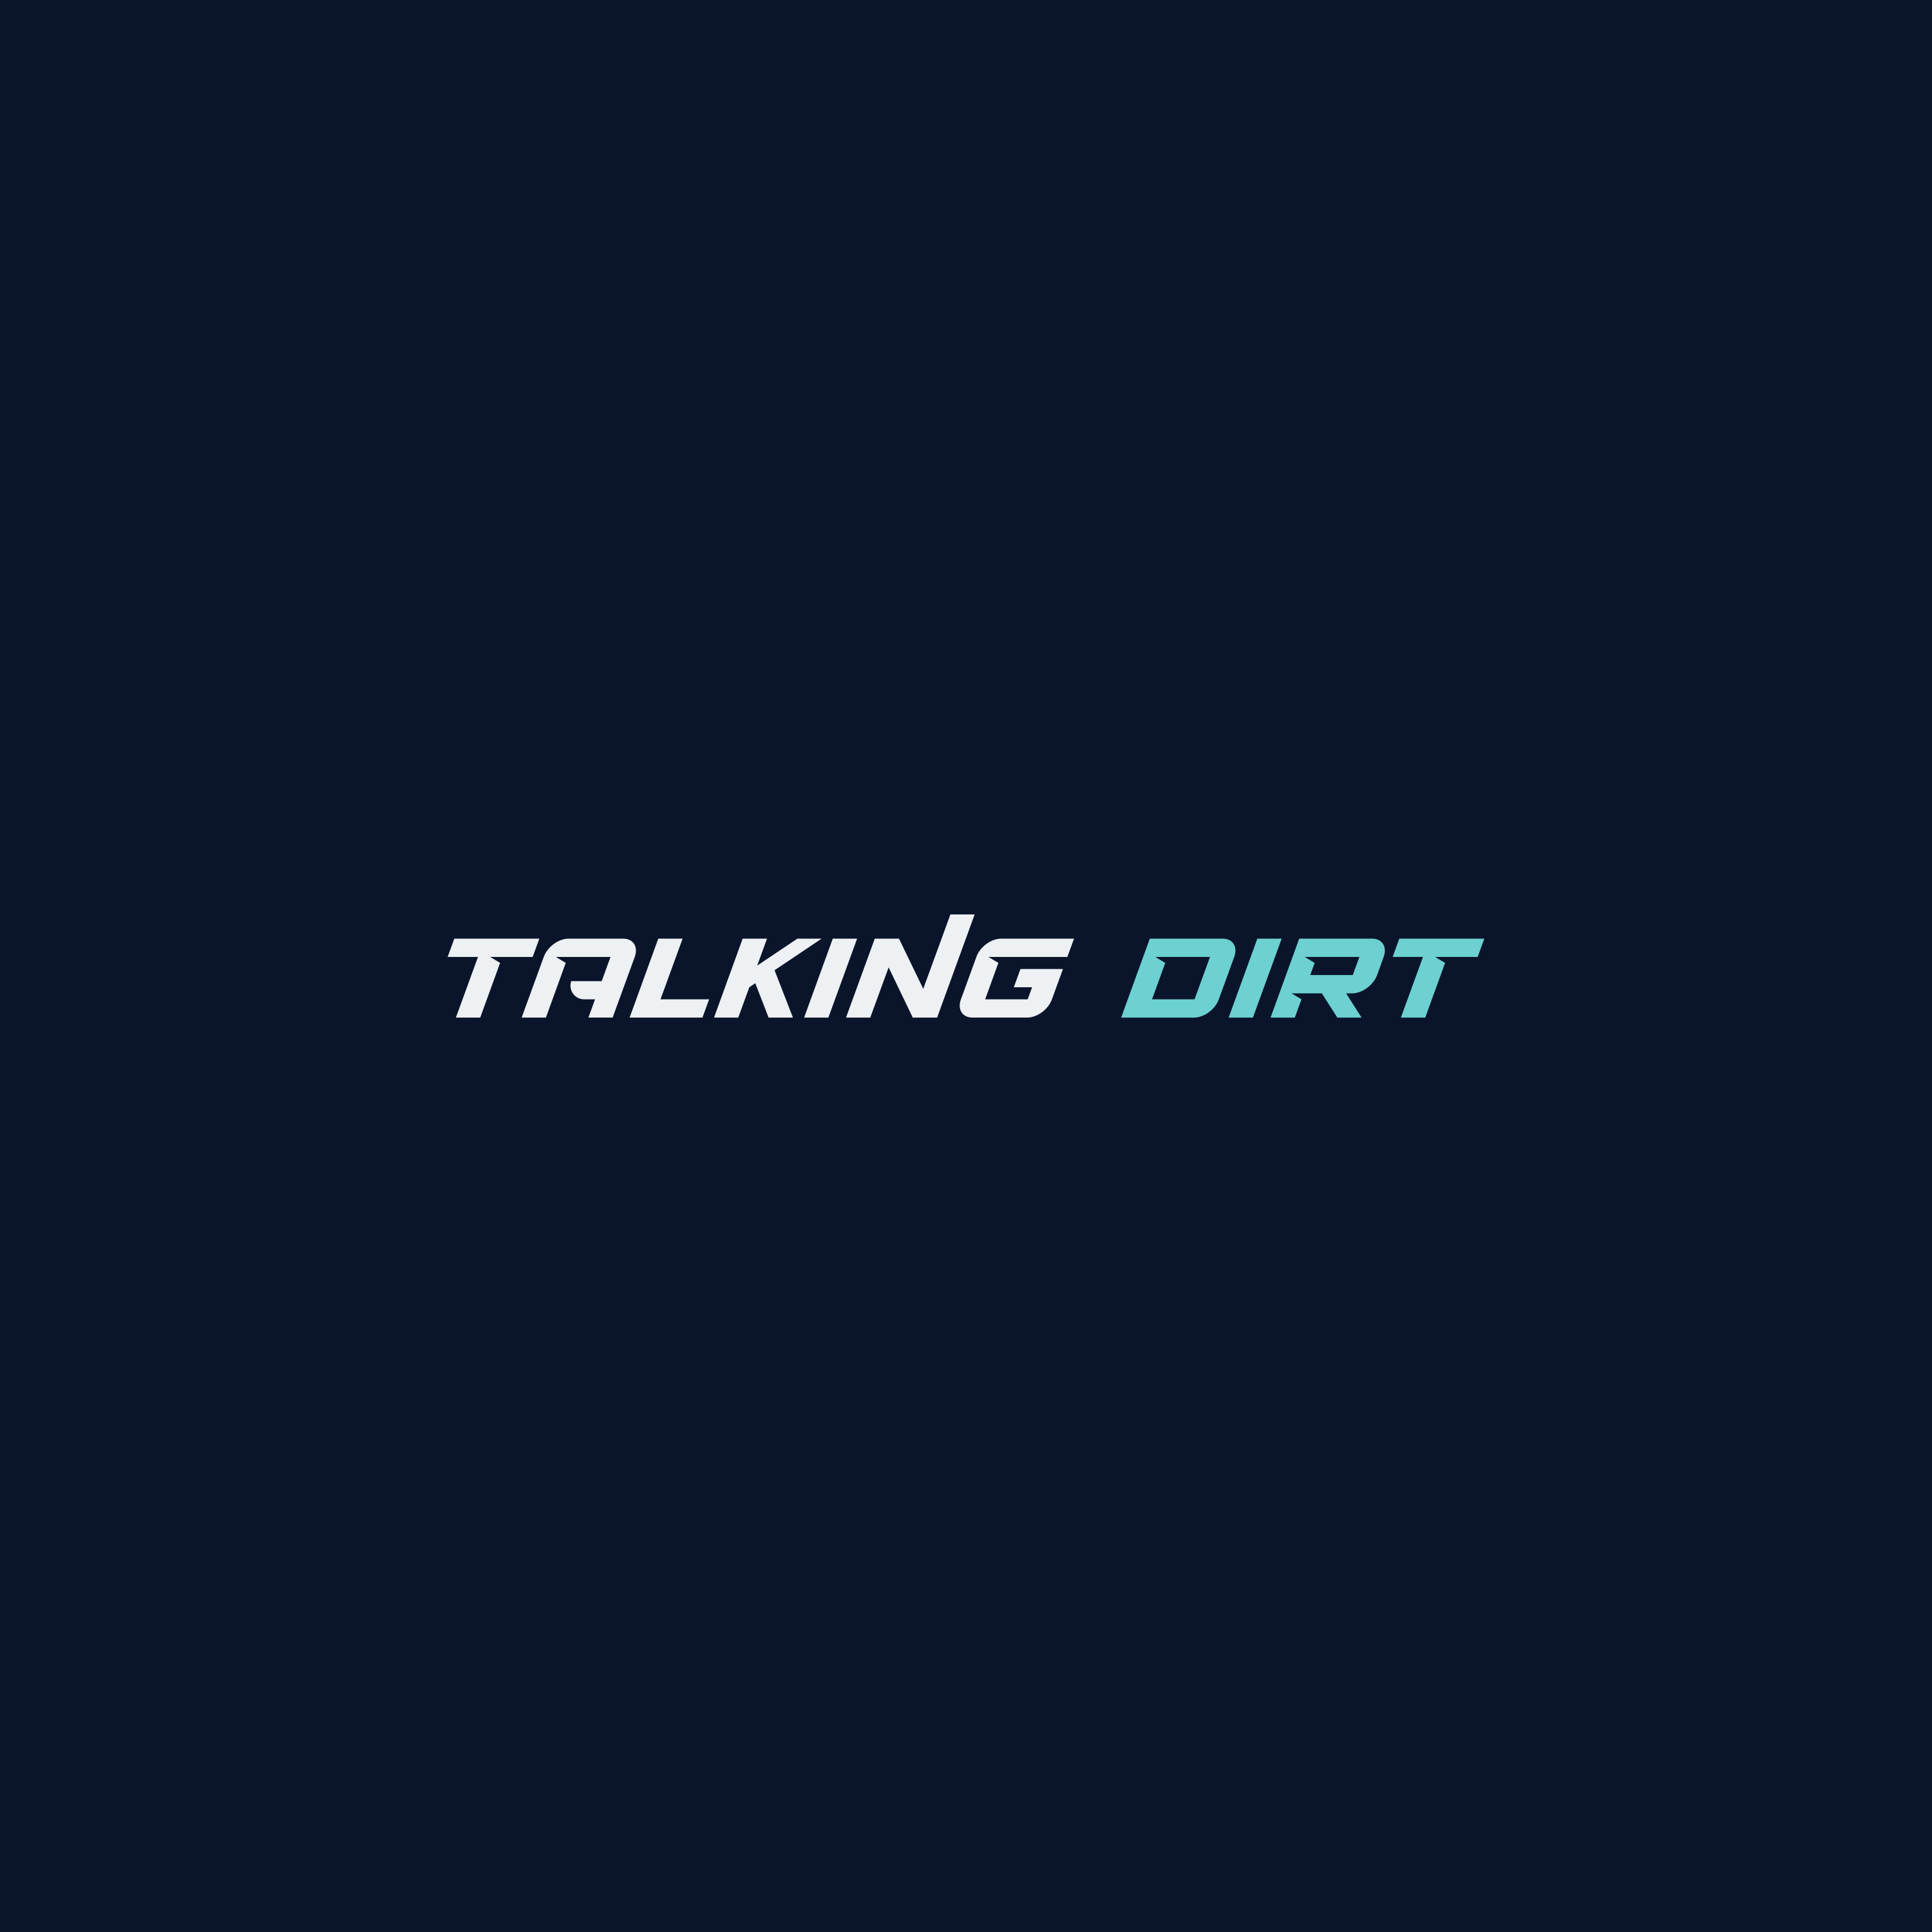 Artwork for Talking Dirt